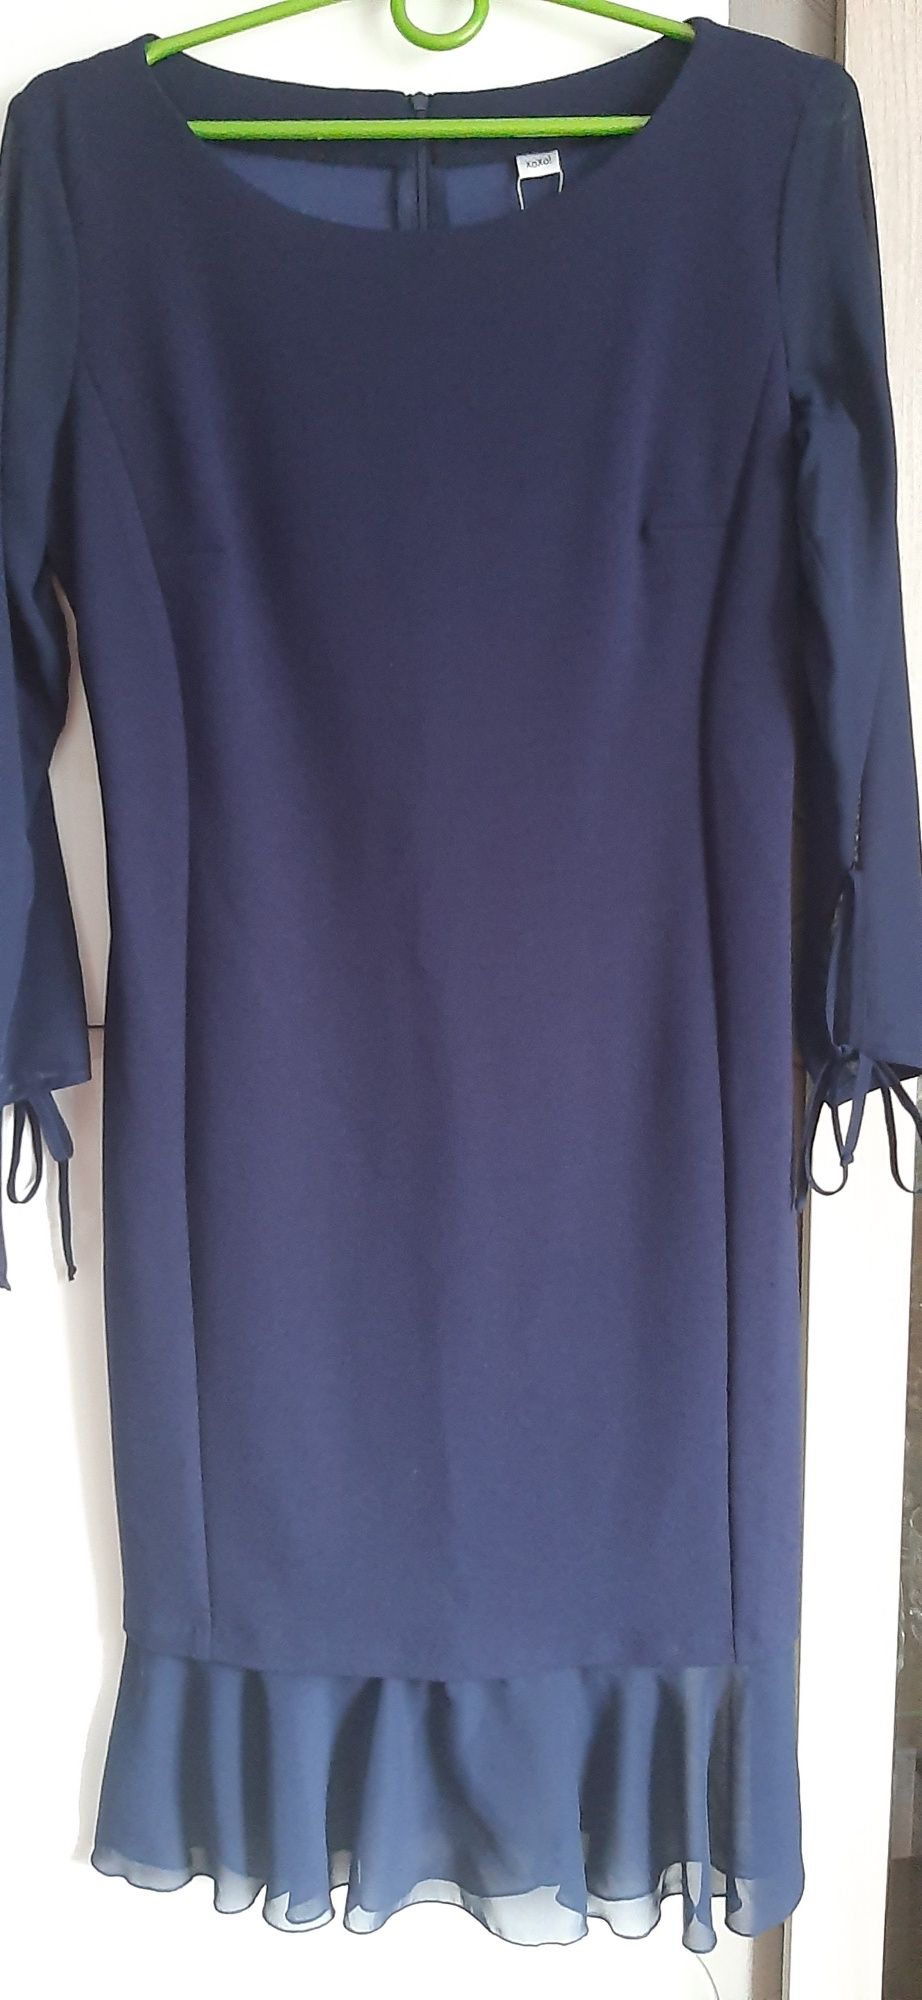 Granatowa sukienka z woalowym rękawem m biust 92 cm do 110